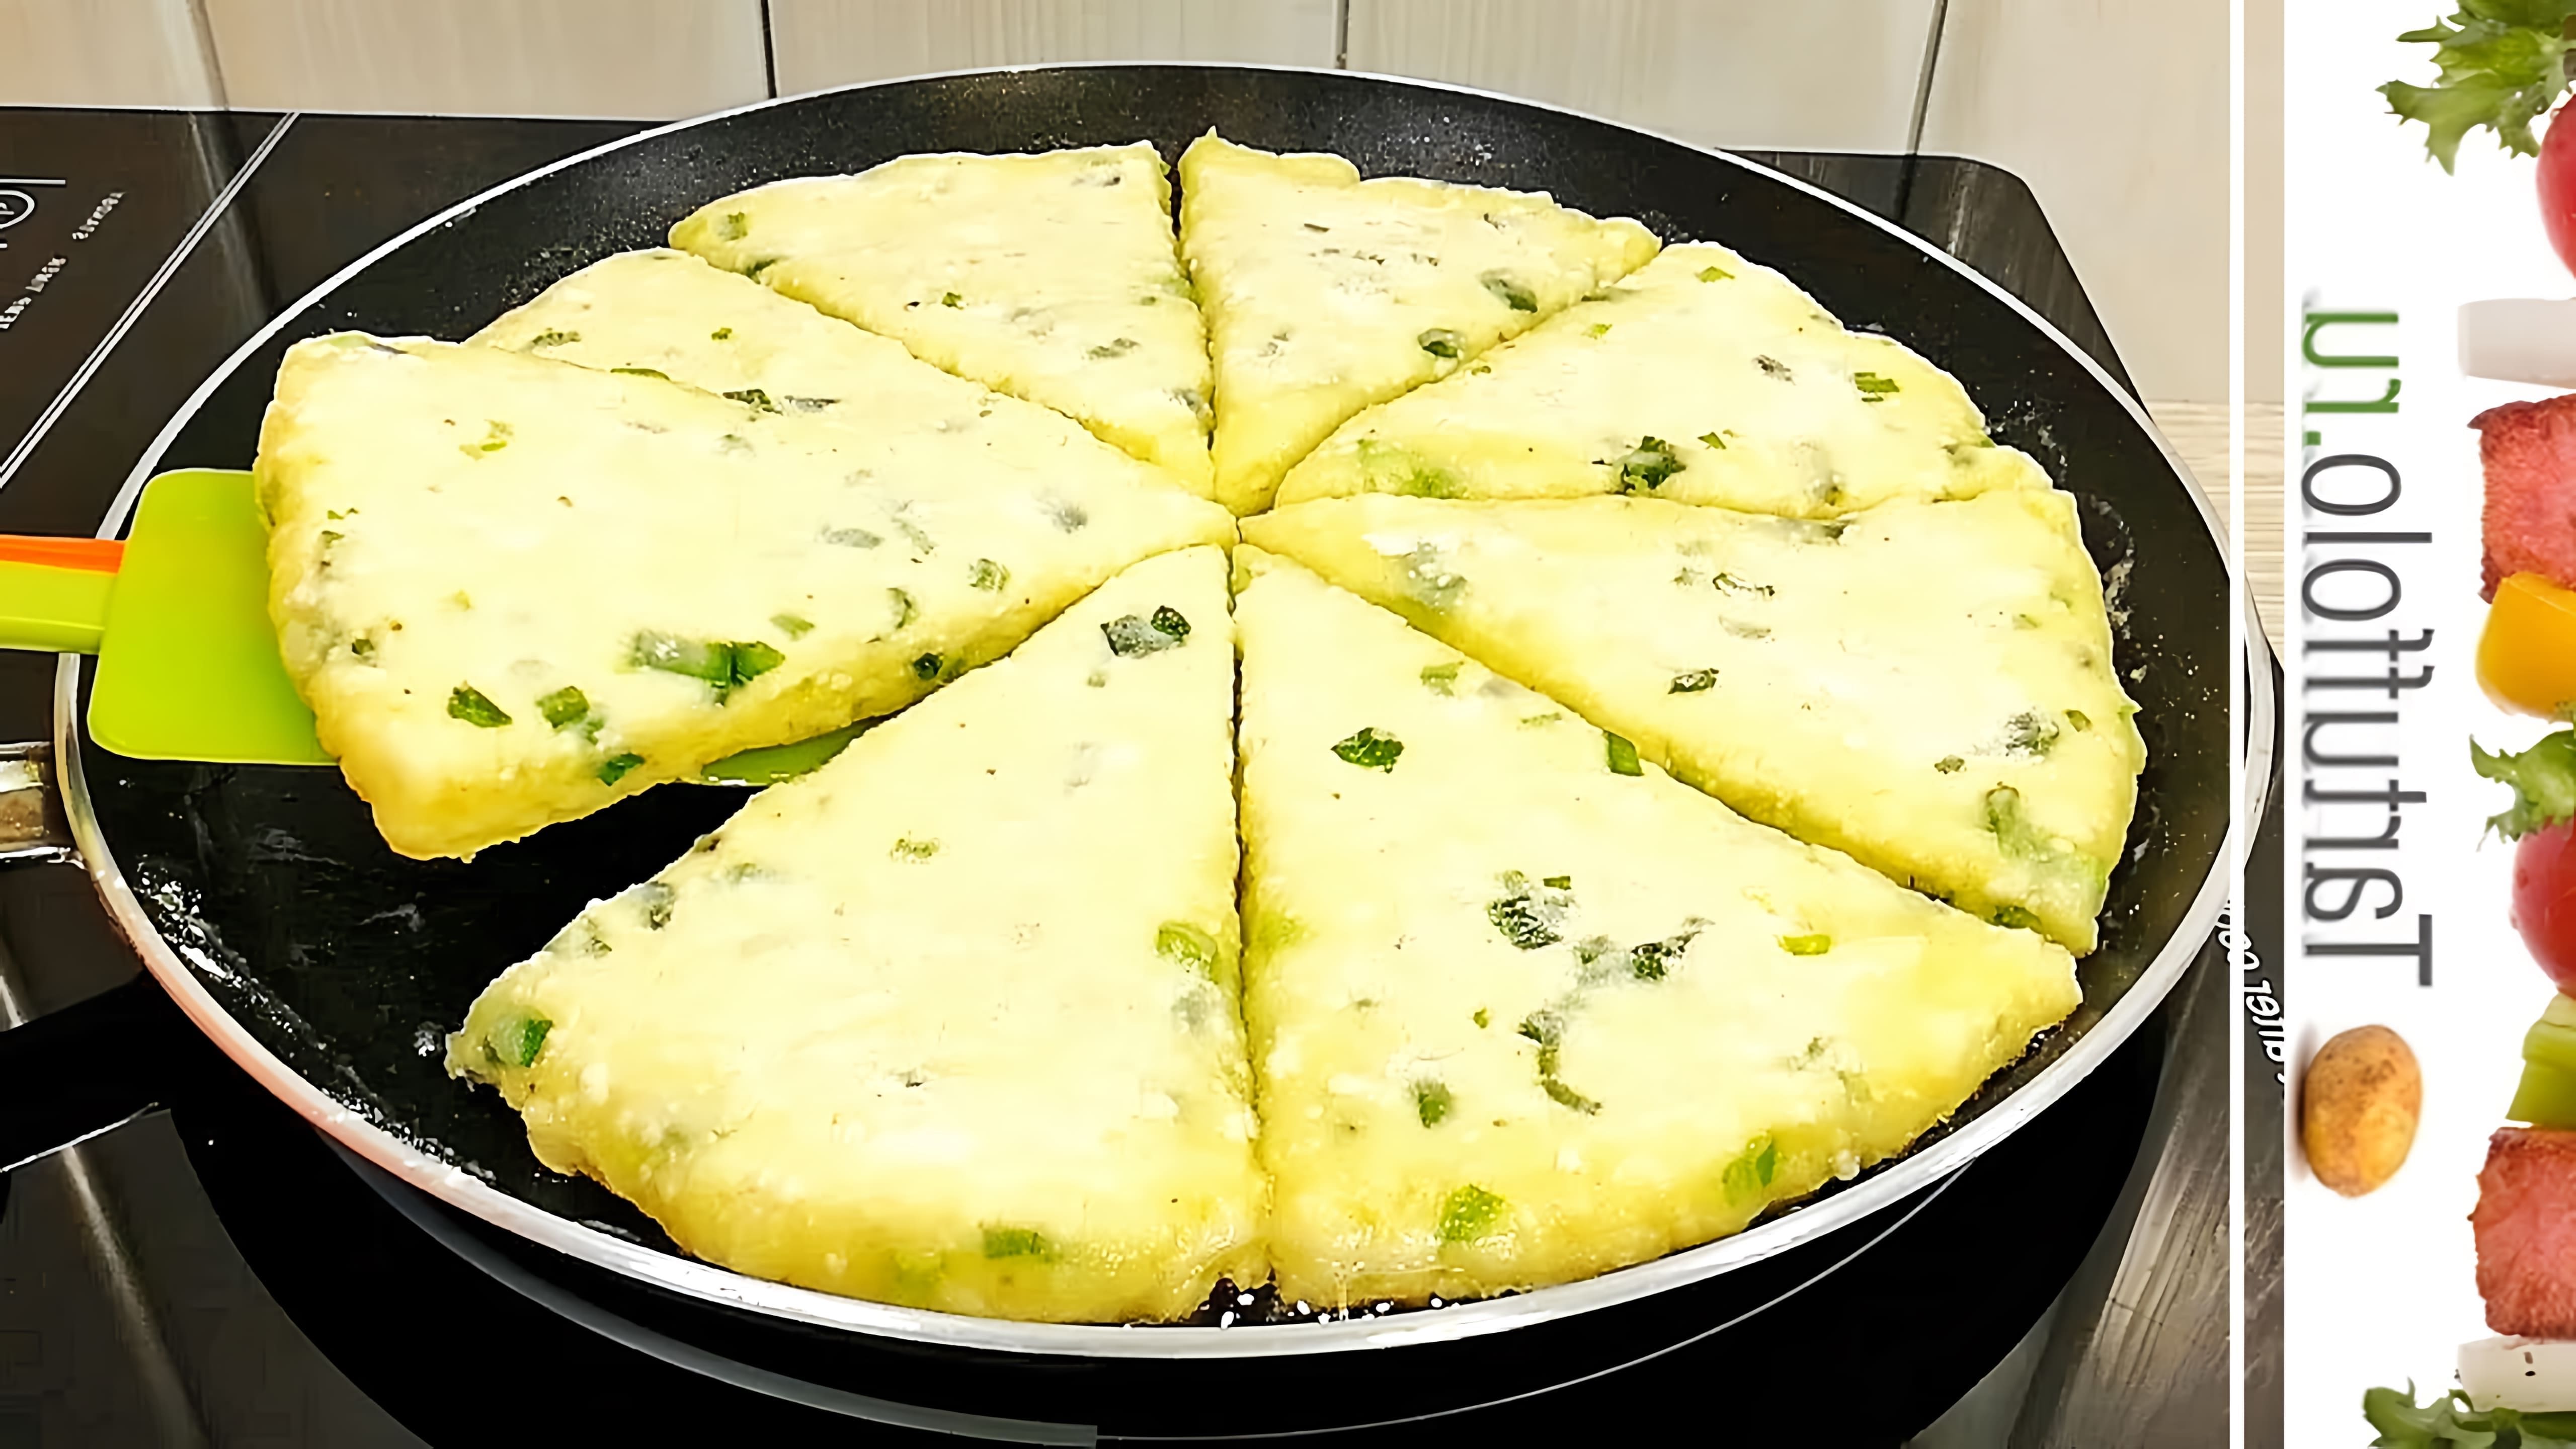 В этом видео демонстрируется рецепт приготовления творожно-сырных лепешек